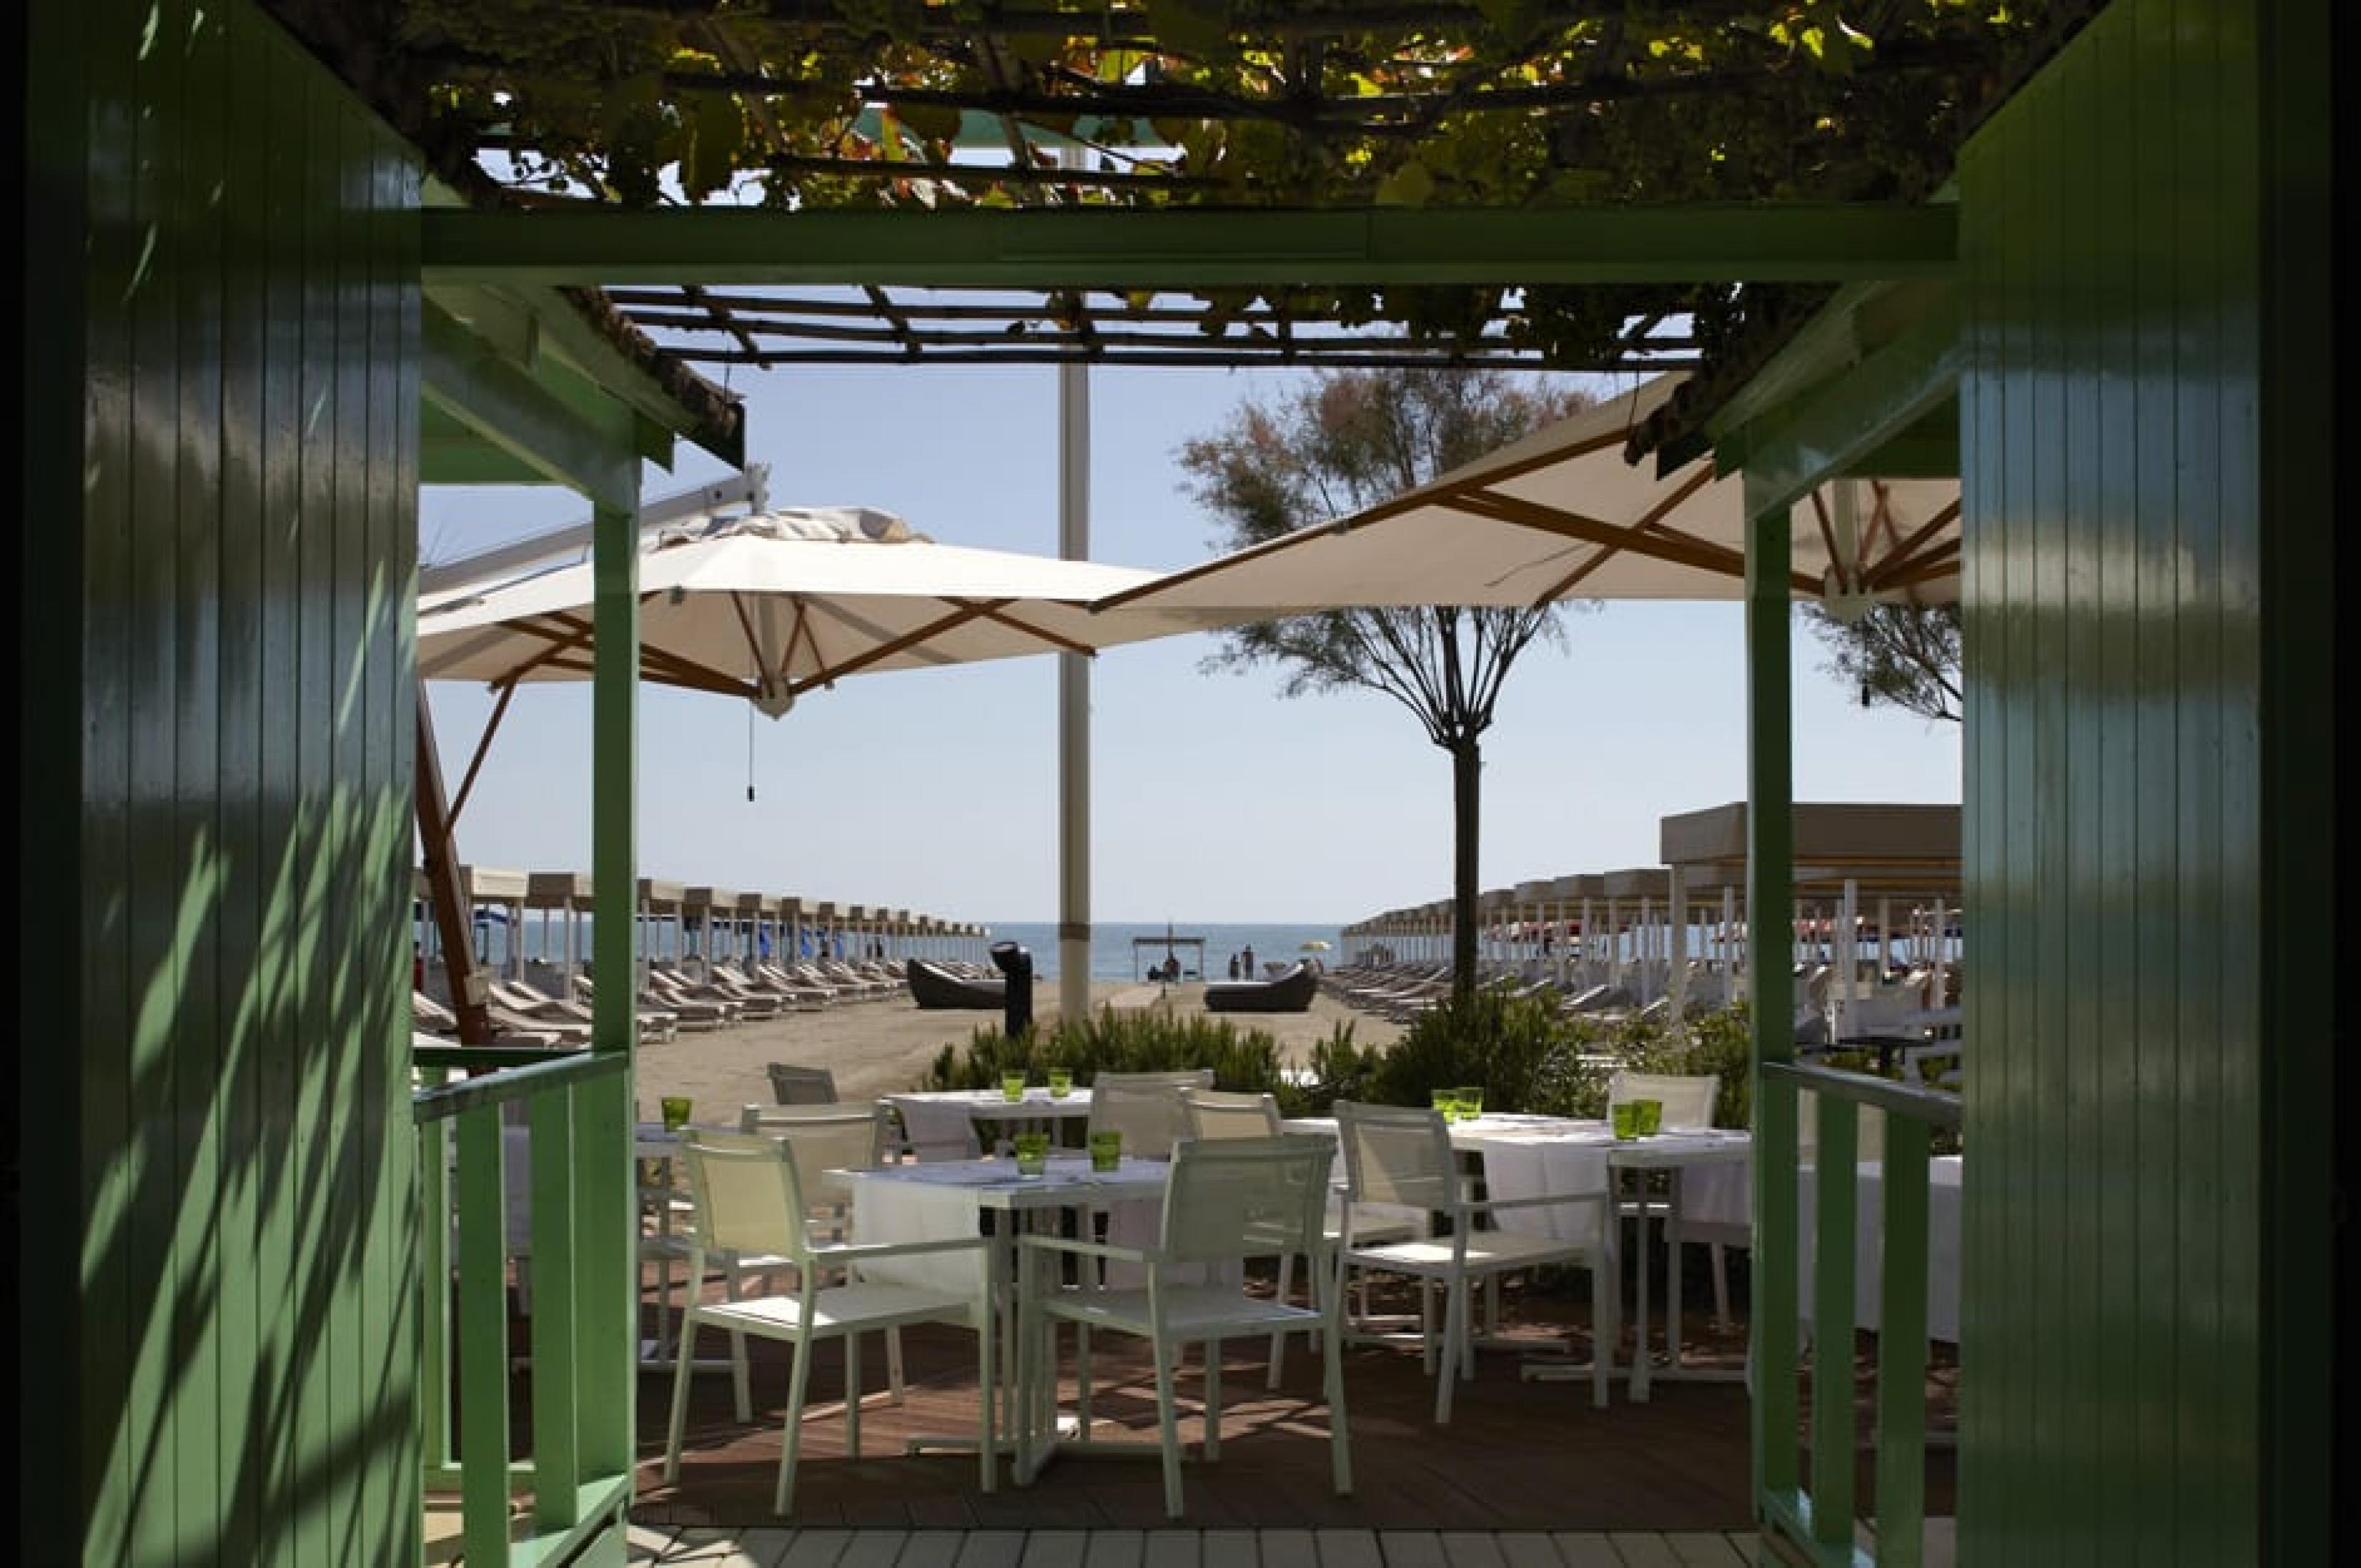 Sea Lounge at  Bagno Dalmazia Beach Restaurant, Forte dei Marmi, Italy